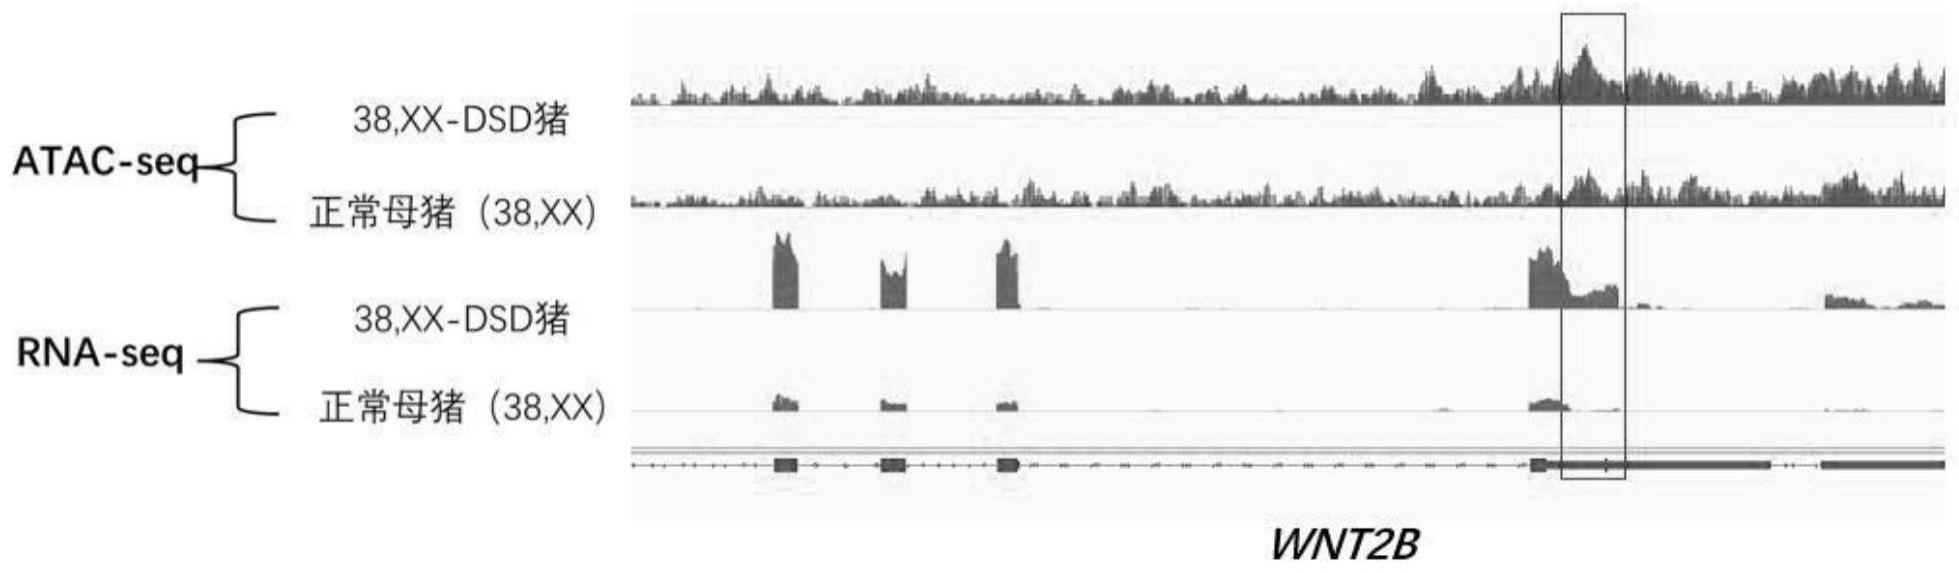 间性猪WNT2B基因的CNV标记及应用